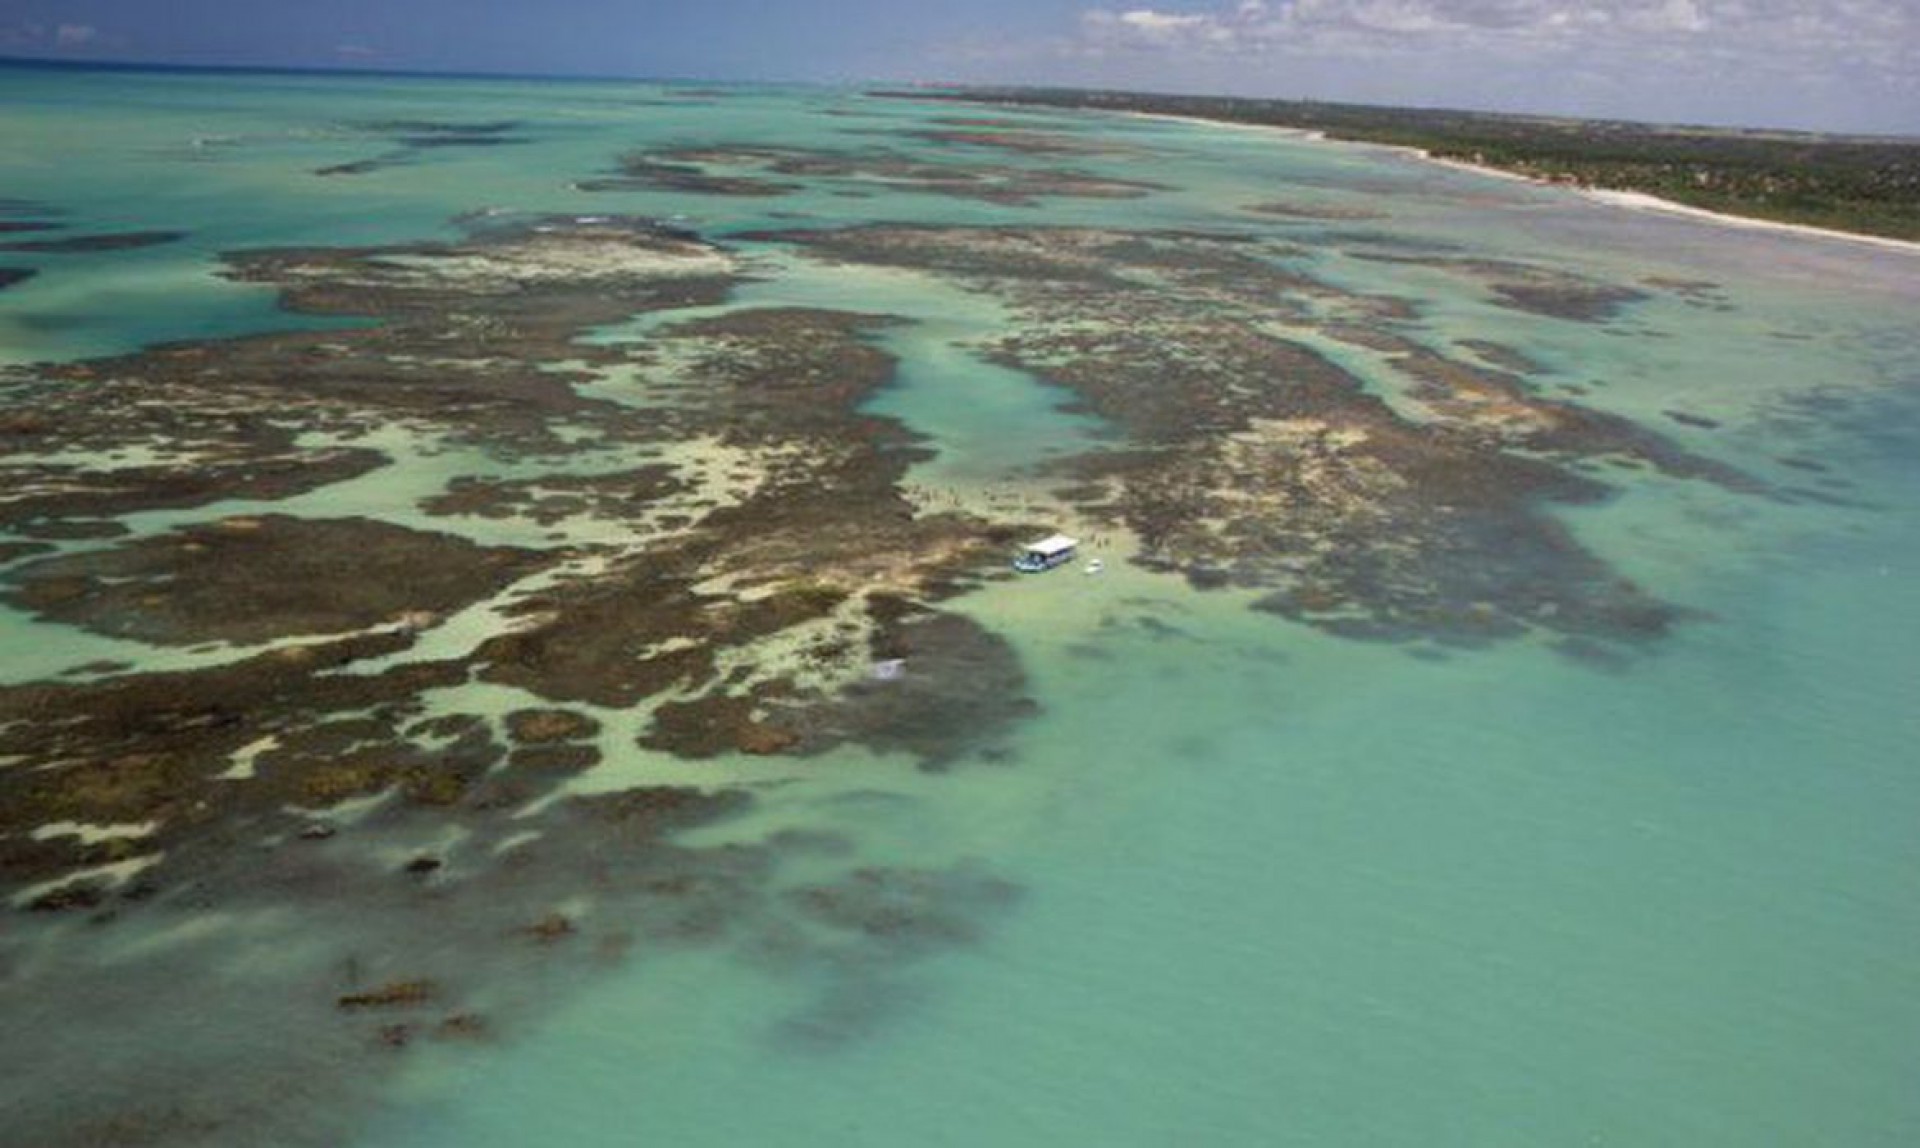 Ameaça sobre recifes de corais do litoral maranhense é apontada pelo Ibama como motivo de não dar aval para exploração de petróleo (Foto: Divulgação)